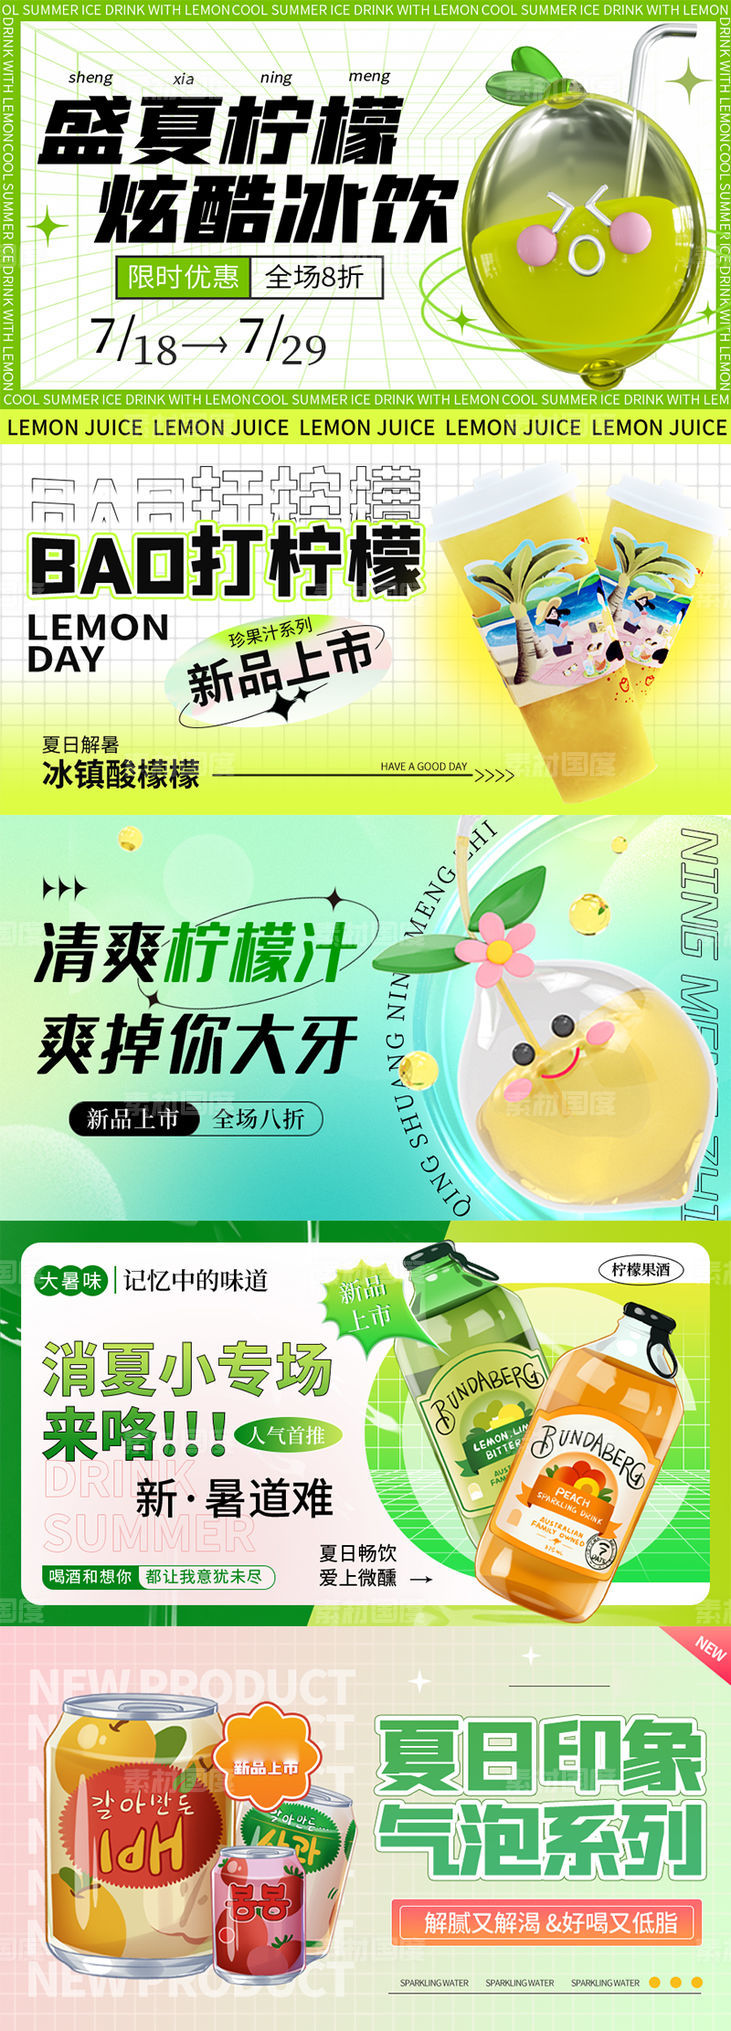 夏日柠檬果茶饮品广告